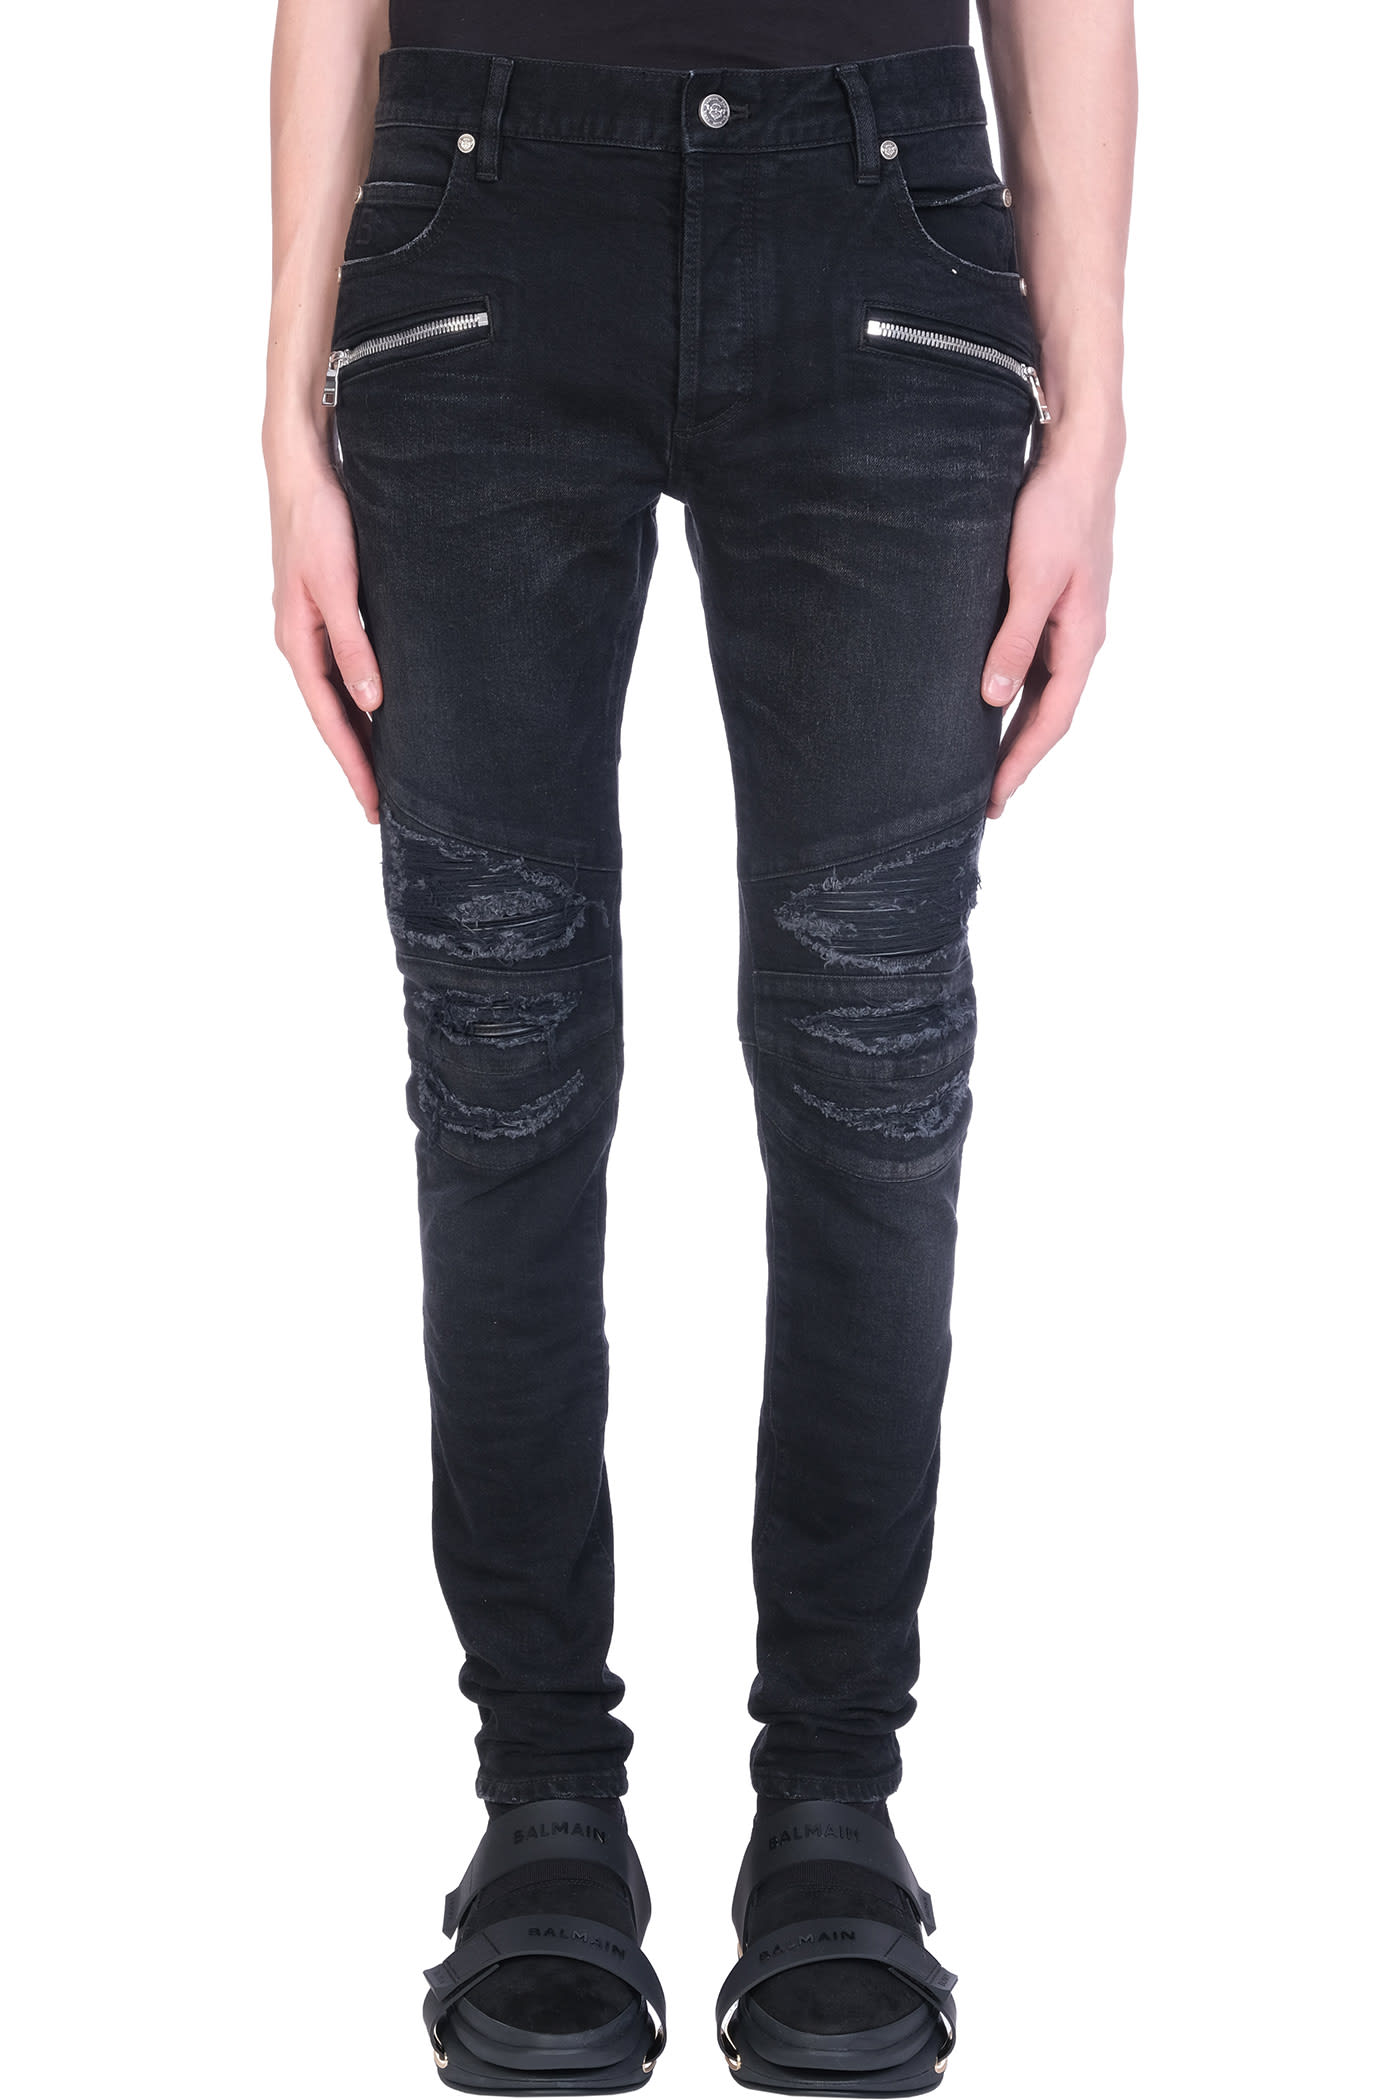 Balmain Slim Jeans Jeans In Black Denim